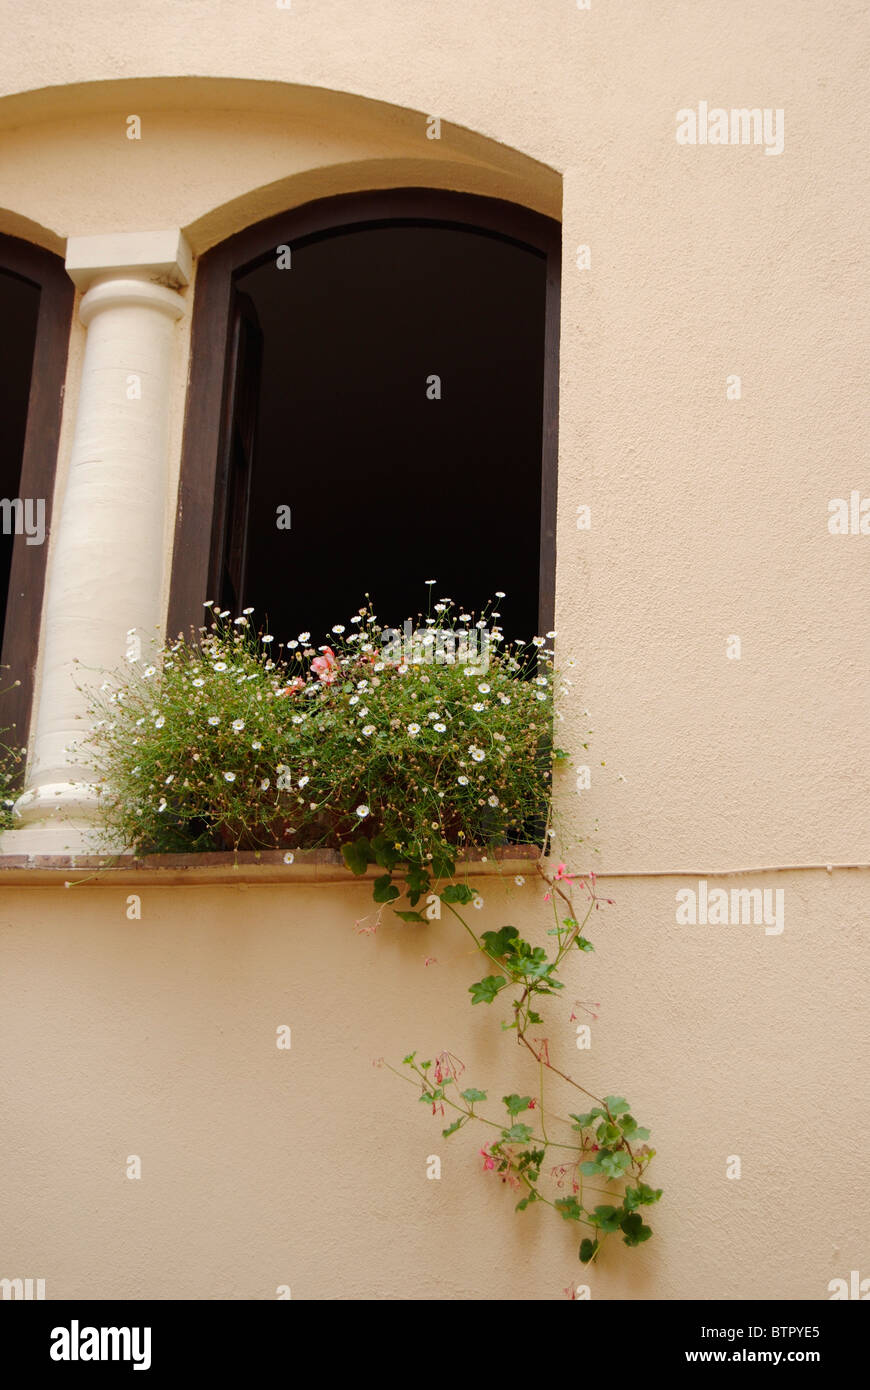 La France, La turbie, plantes à fleurs sur la fenêtre Banque D'Images